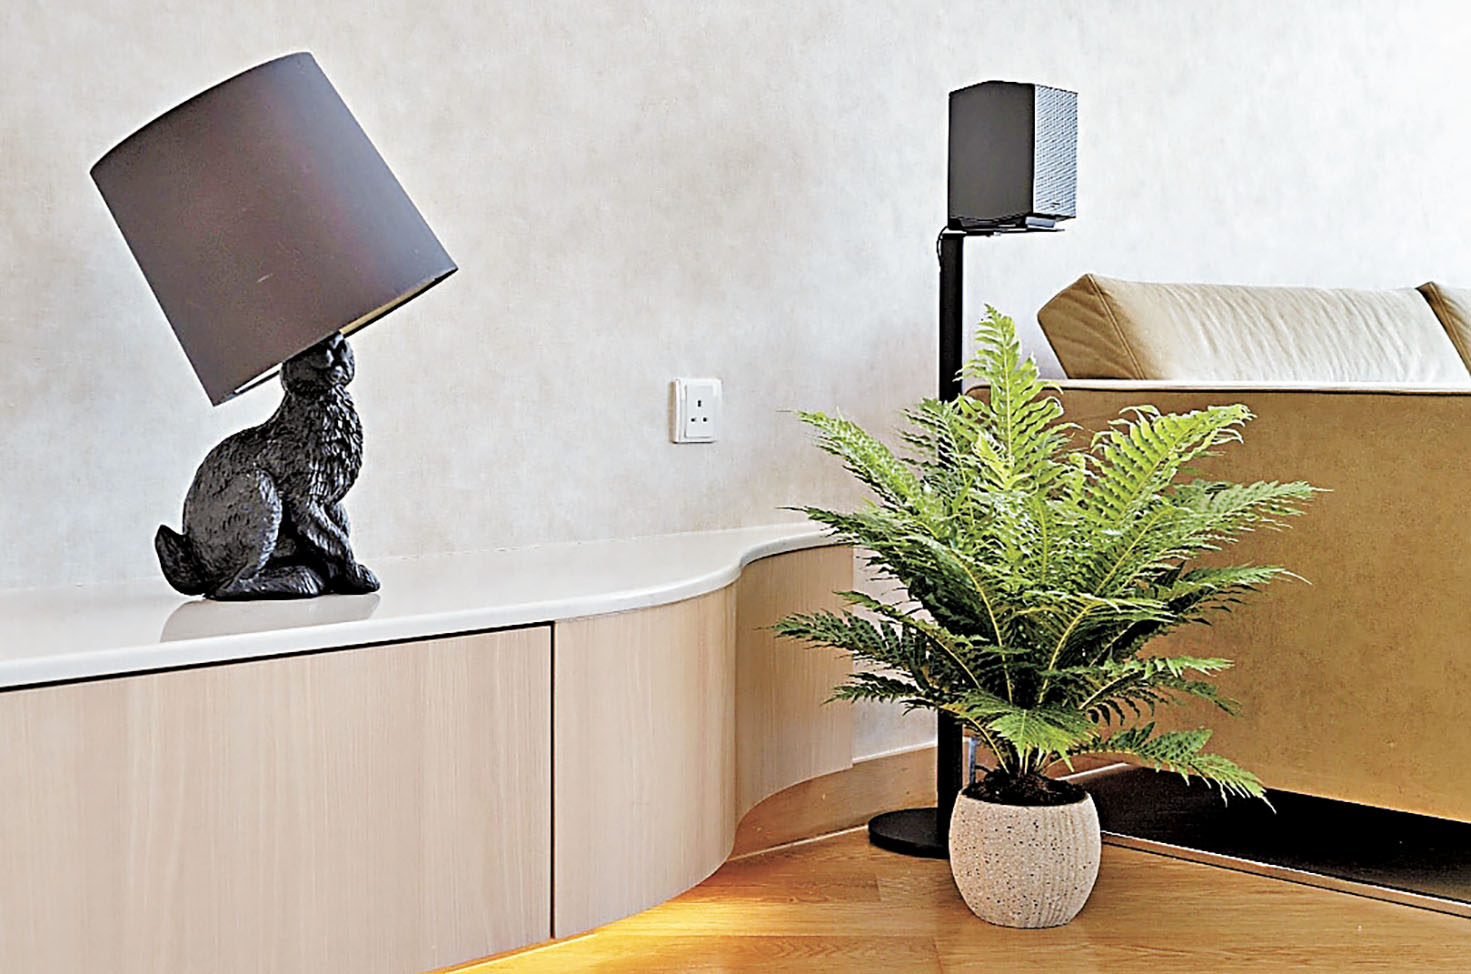 ■客廳一旁放置型格座枱燈，綠色盆栽，點綴生活。